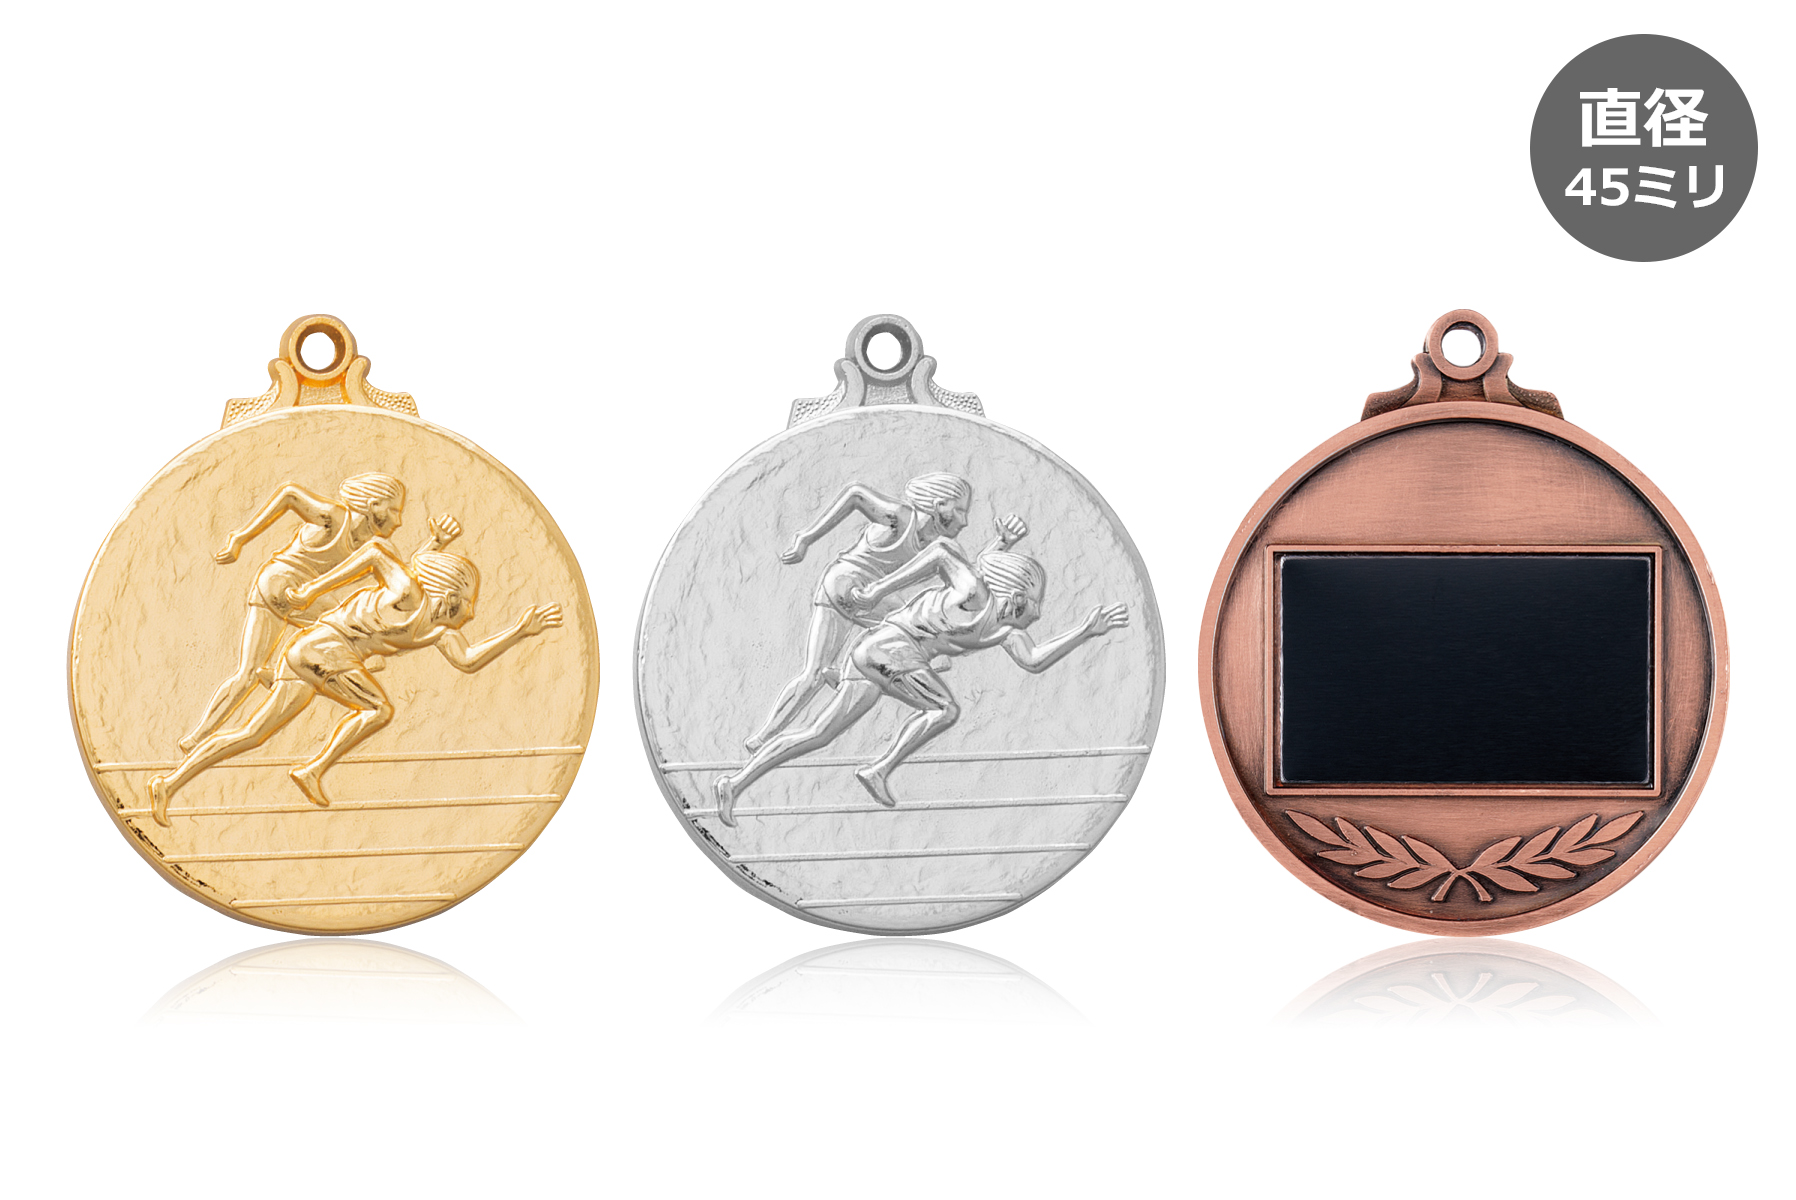 陸上競技の表彰を盛上げるランナーメダル JW-45Y-athletics